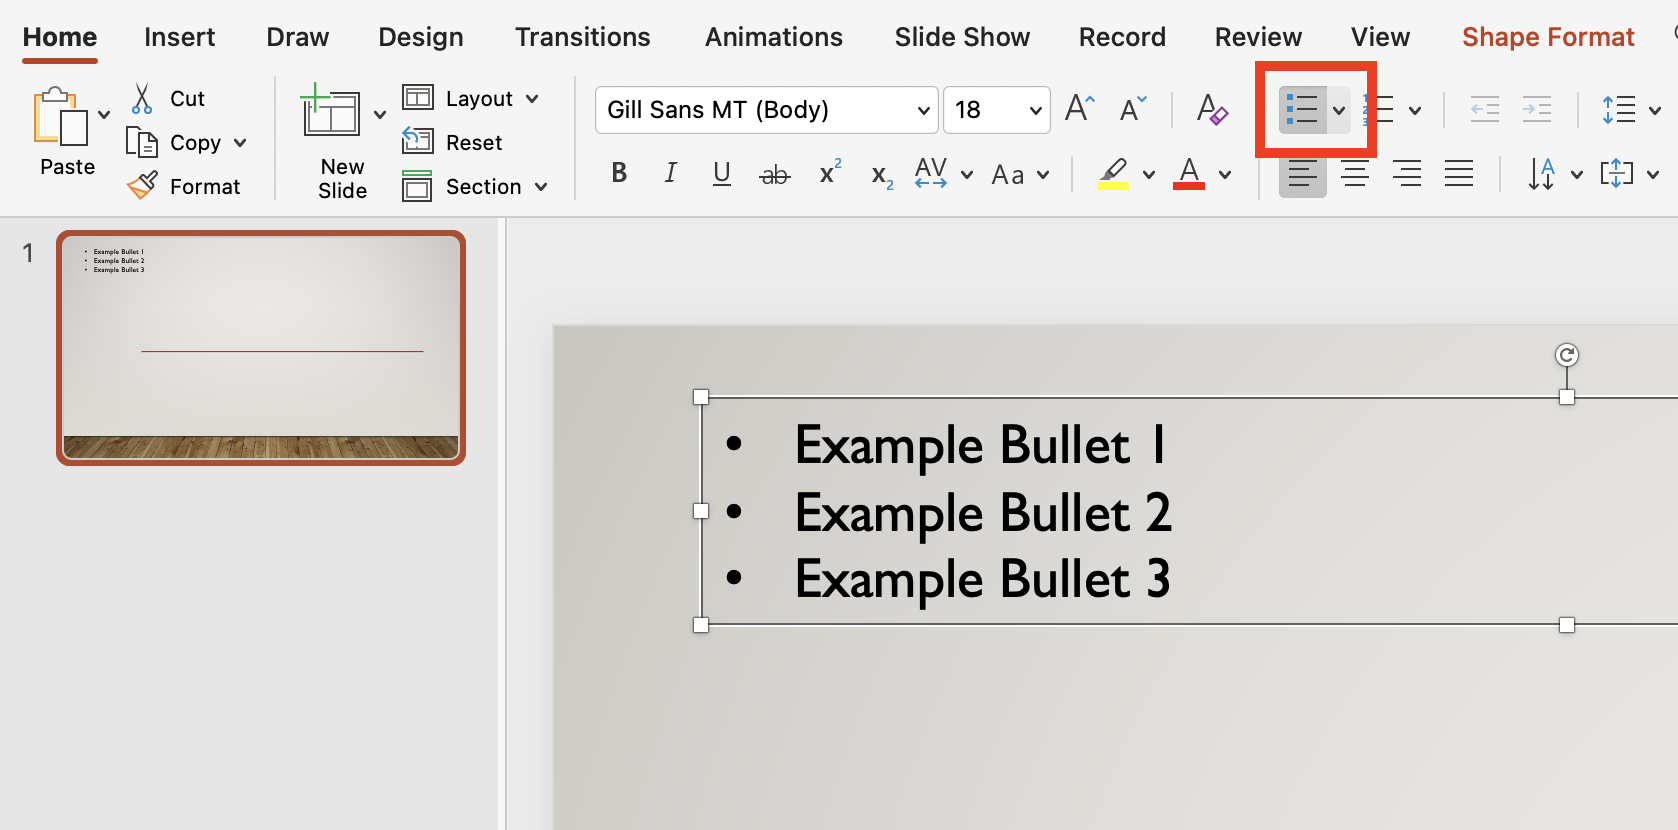 Bullet List Menu in PowerPoint